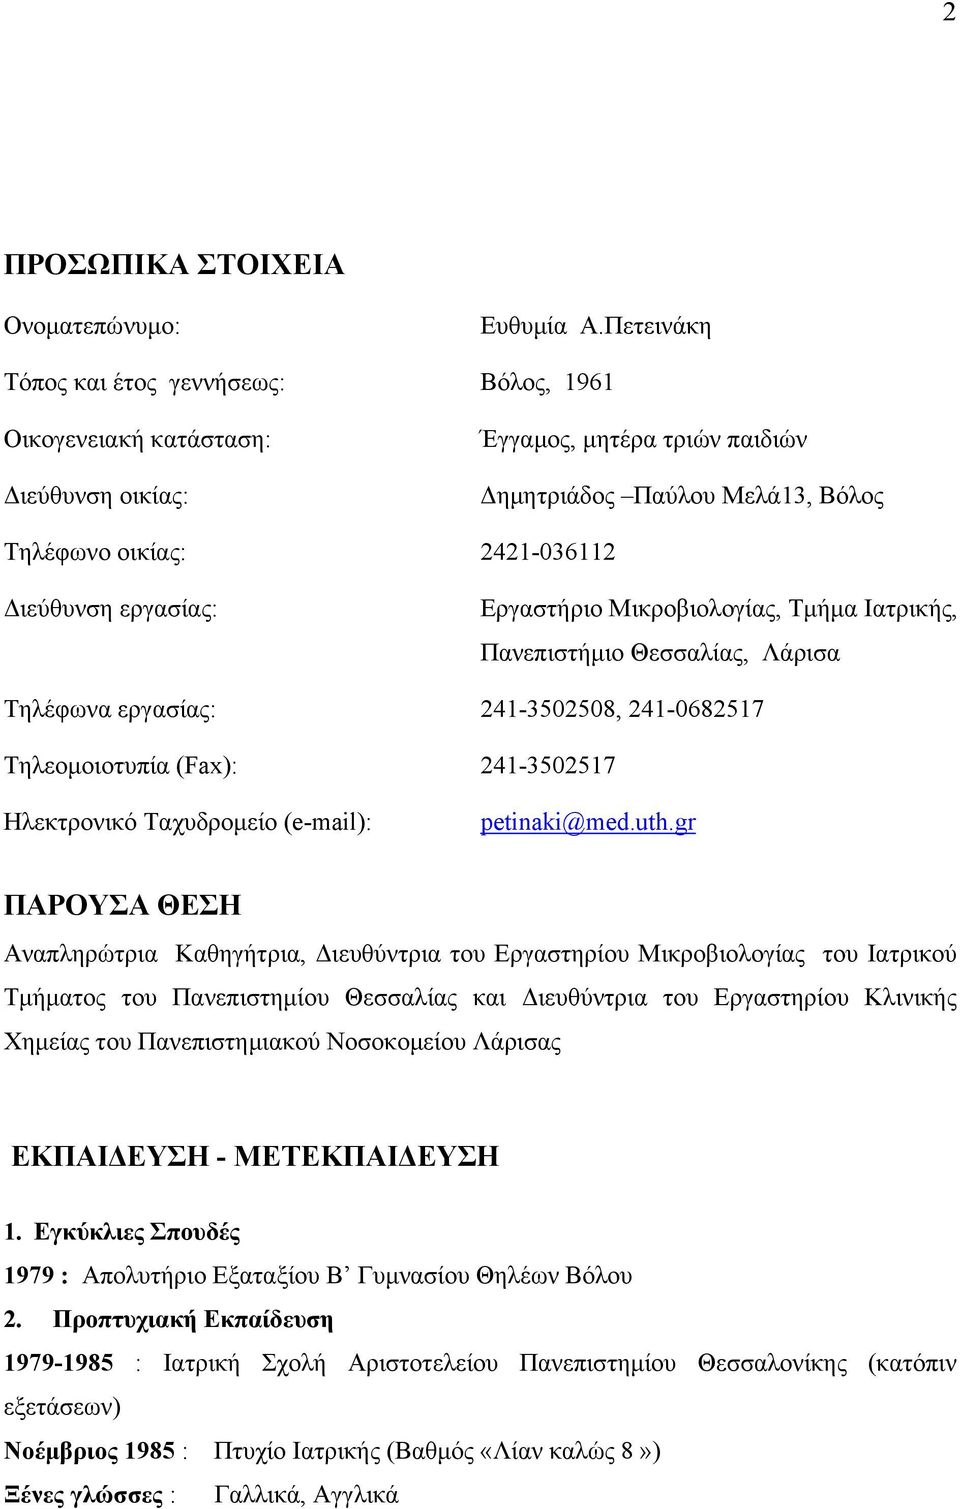 εργασίας: Εργαστήριο Μικροβιολογίας, Τμήμα Ιατρικής, Πανεπιστήμιο Θεσσαλίας, Λάρισα Τηλέφωνα εργασίας: 241-3502508, 241-0682517 Τηλεομοιοτυπία (Fax): 241-3502517 Ηλεκτρονικό Ταχυδρομείο (e-mail):